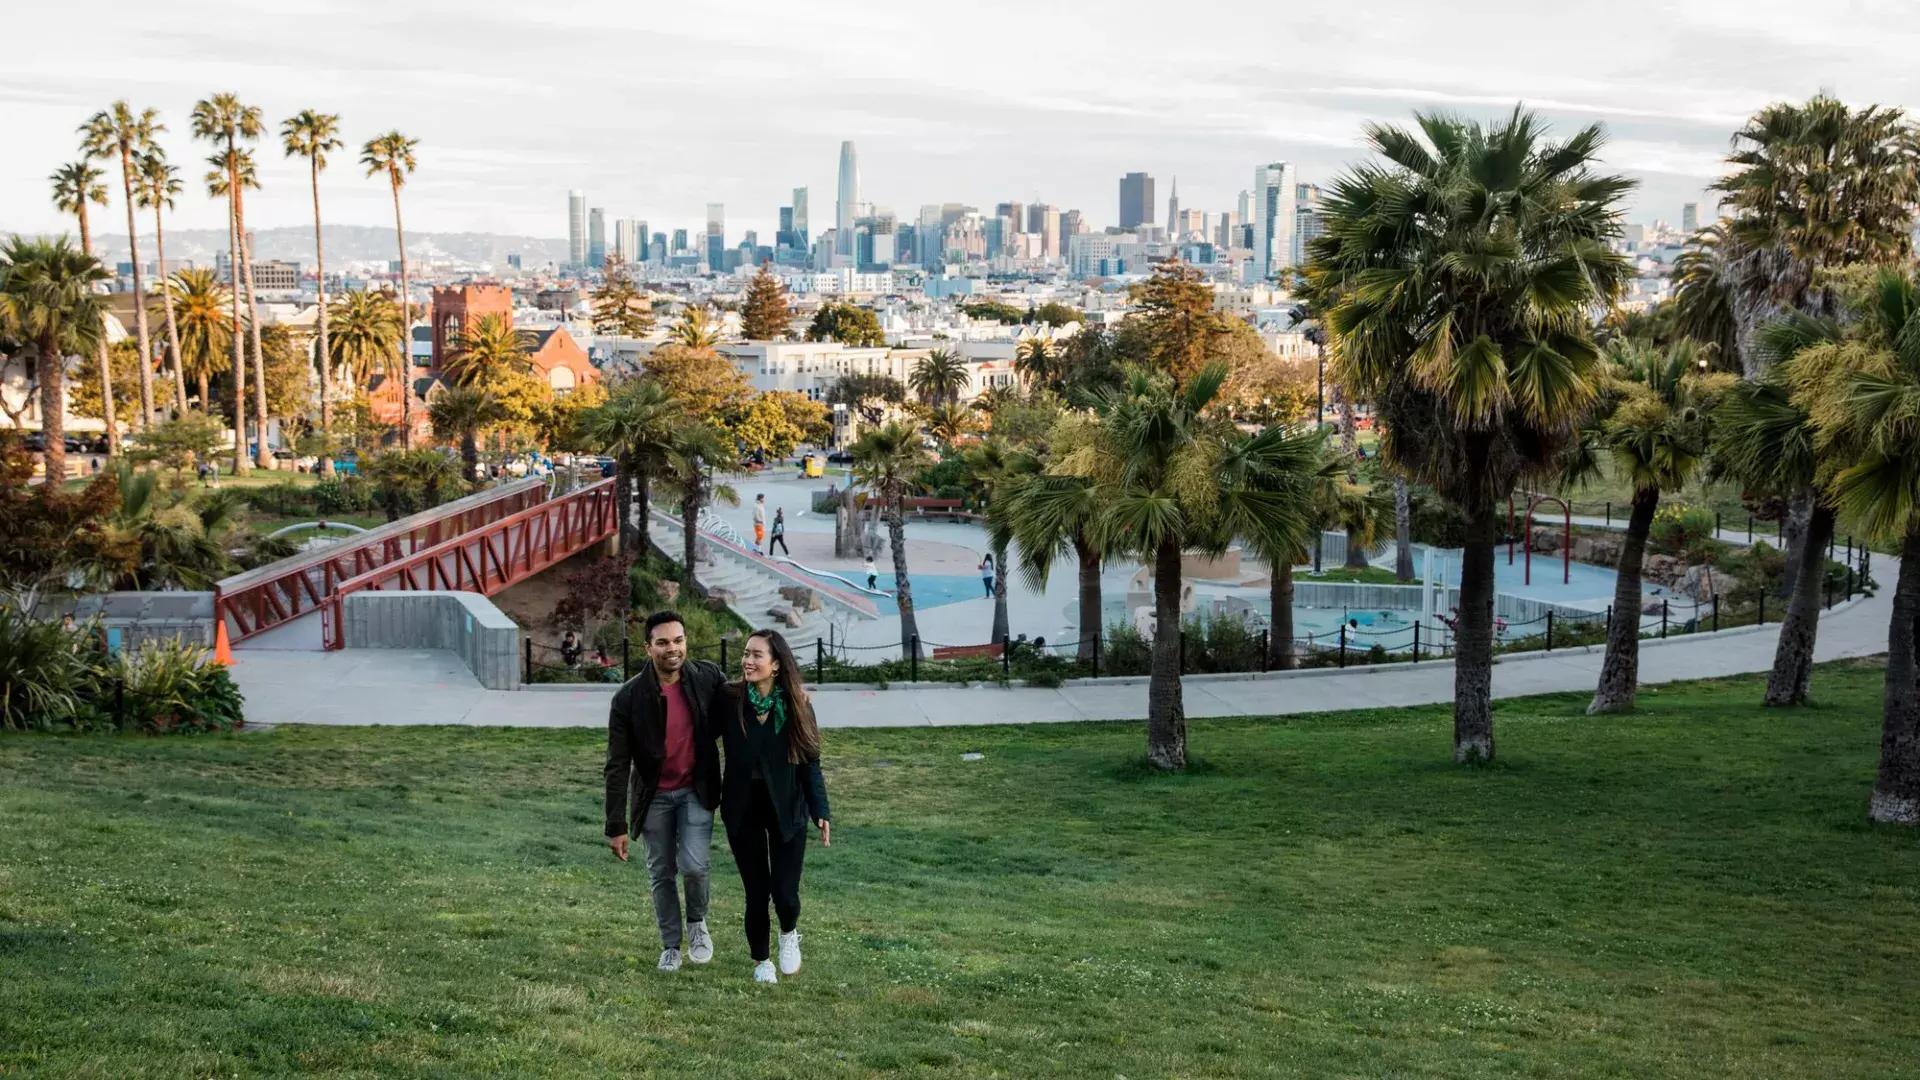 ドロレス公園とサンフランシスコのスカイラインを背にカメラに向かって歩くカップル。